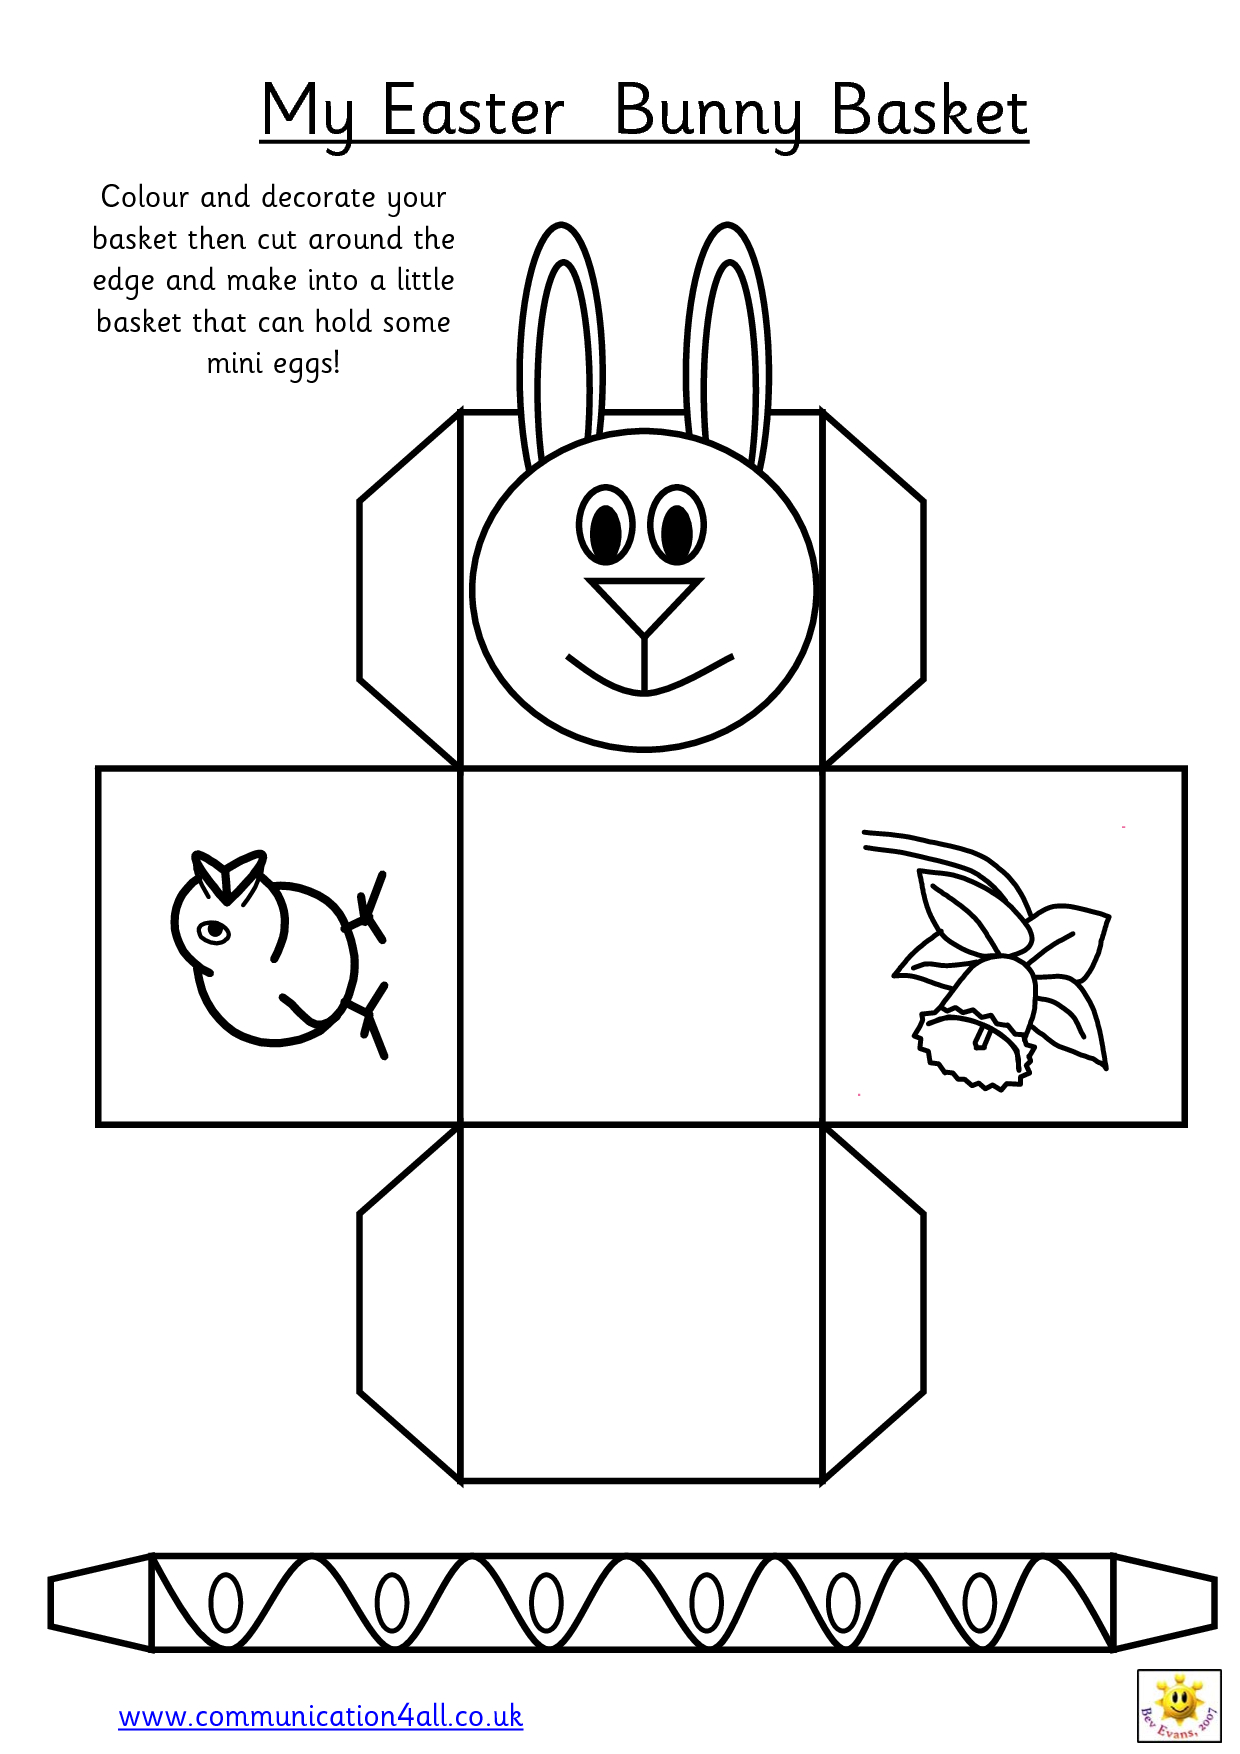 Printable Easter Egg Basket Templates – Hd Easter Images - Free Printable Easter Egg Basket Templates